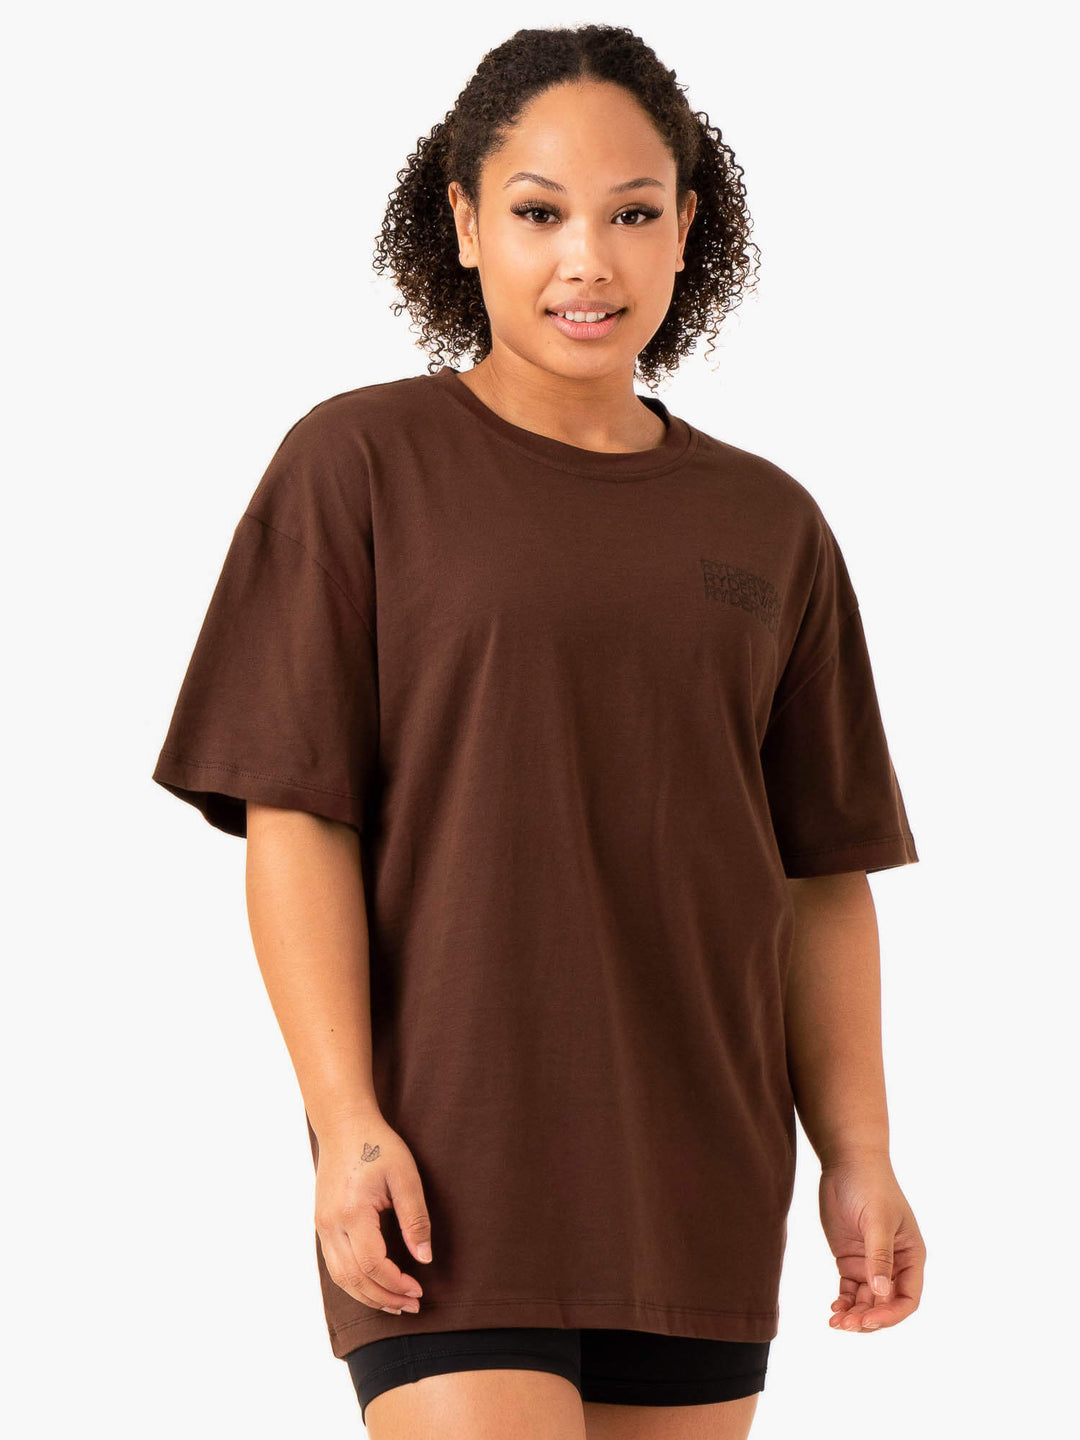 Level Up Oversized T-Shirt - Chocolate Clothing Ryderwear 